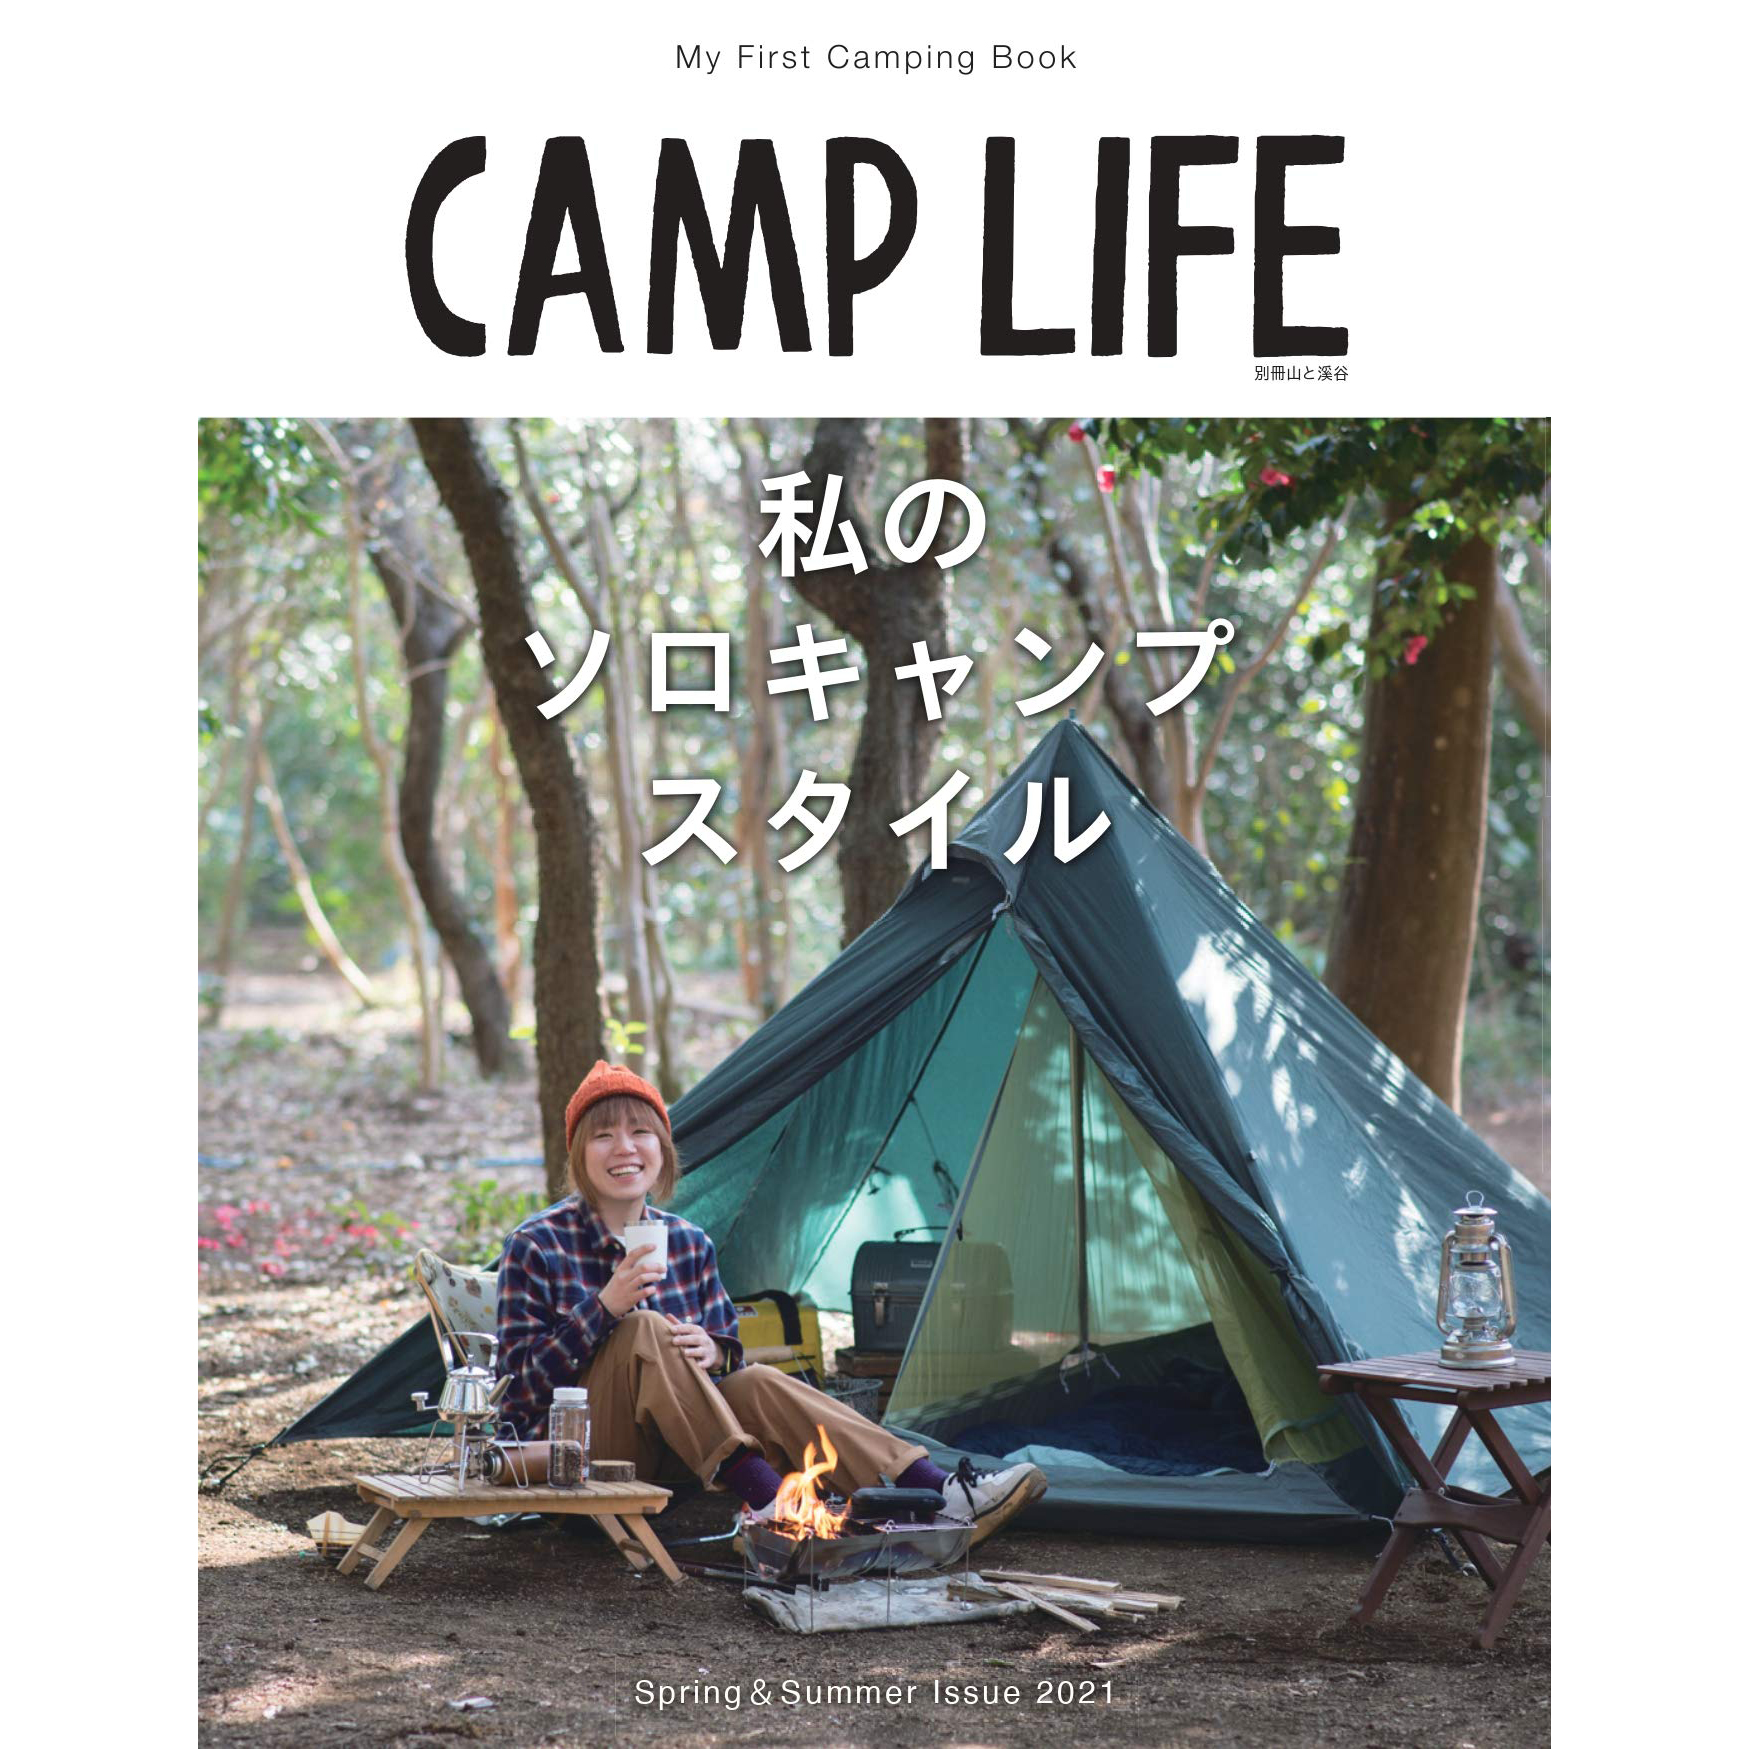 现货 CAMP LIFE Spring&Summer Issue 2021 日本户外帐篷露营书 私のソロキャンプスタイル 我的单人露营风格